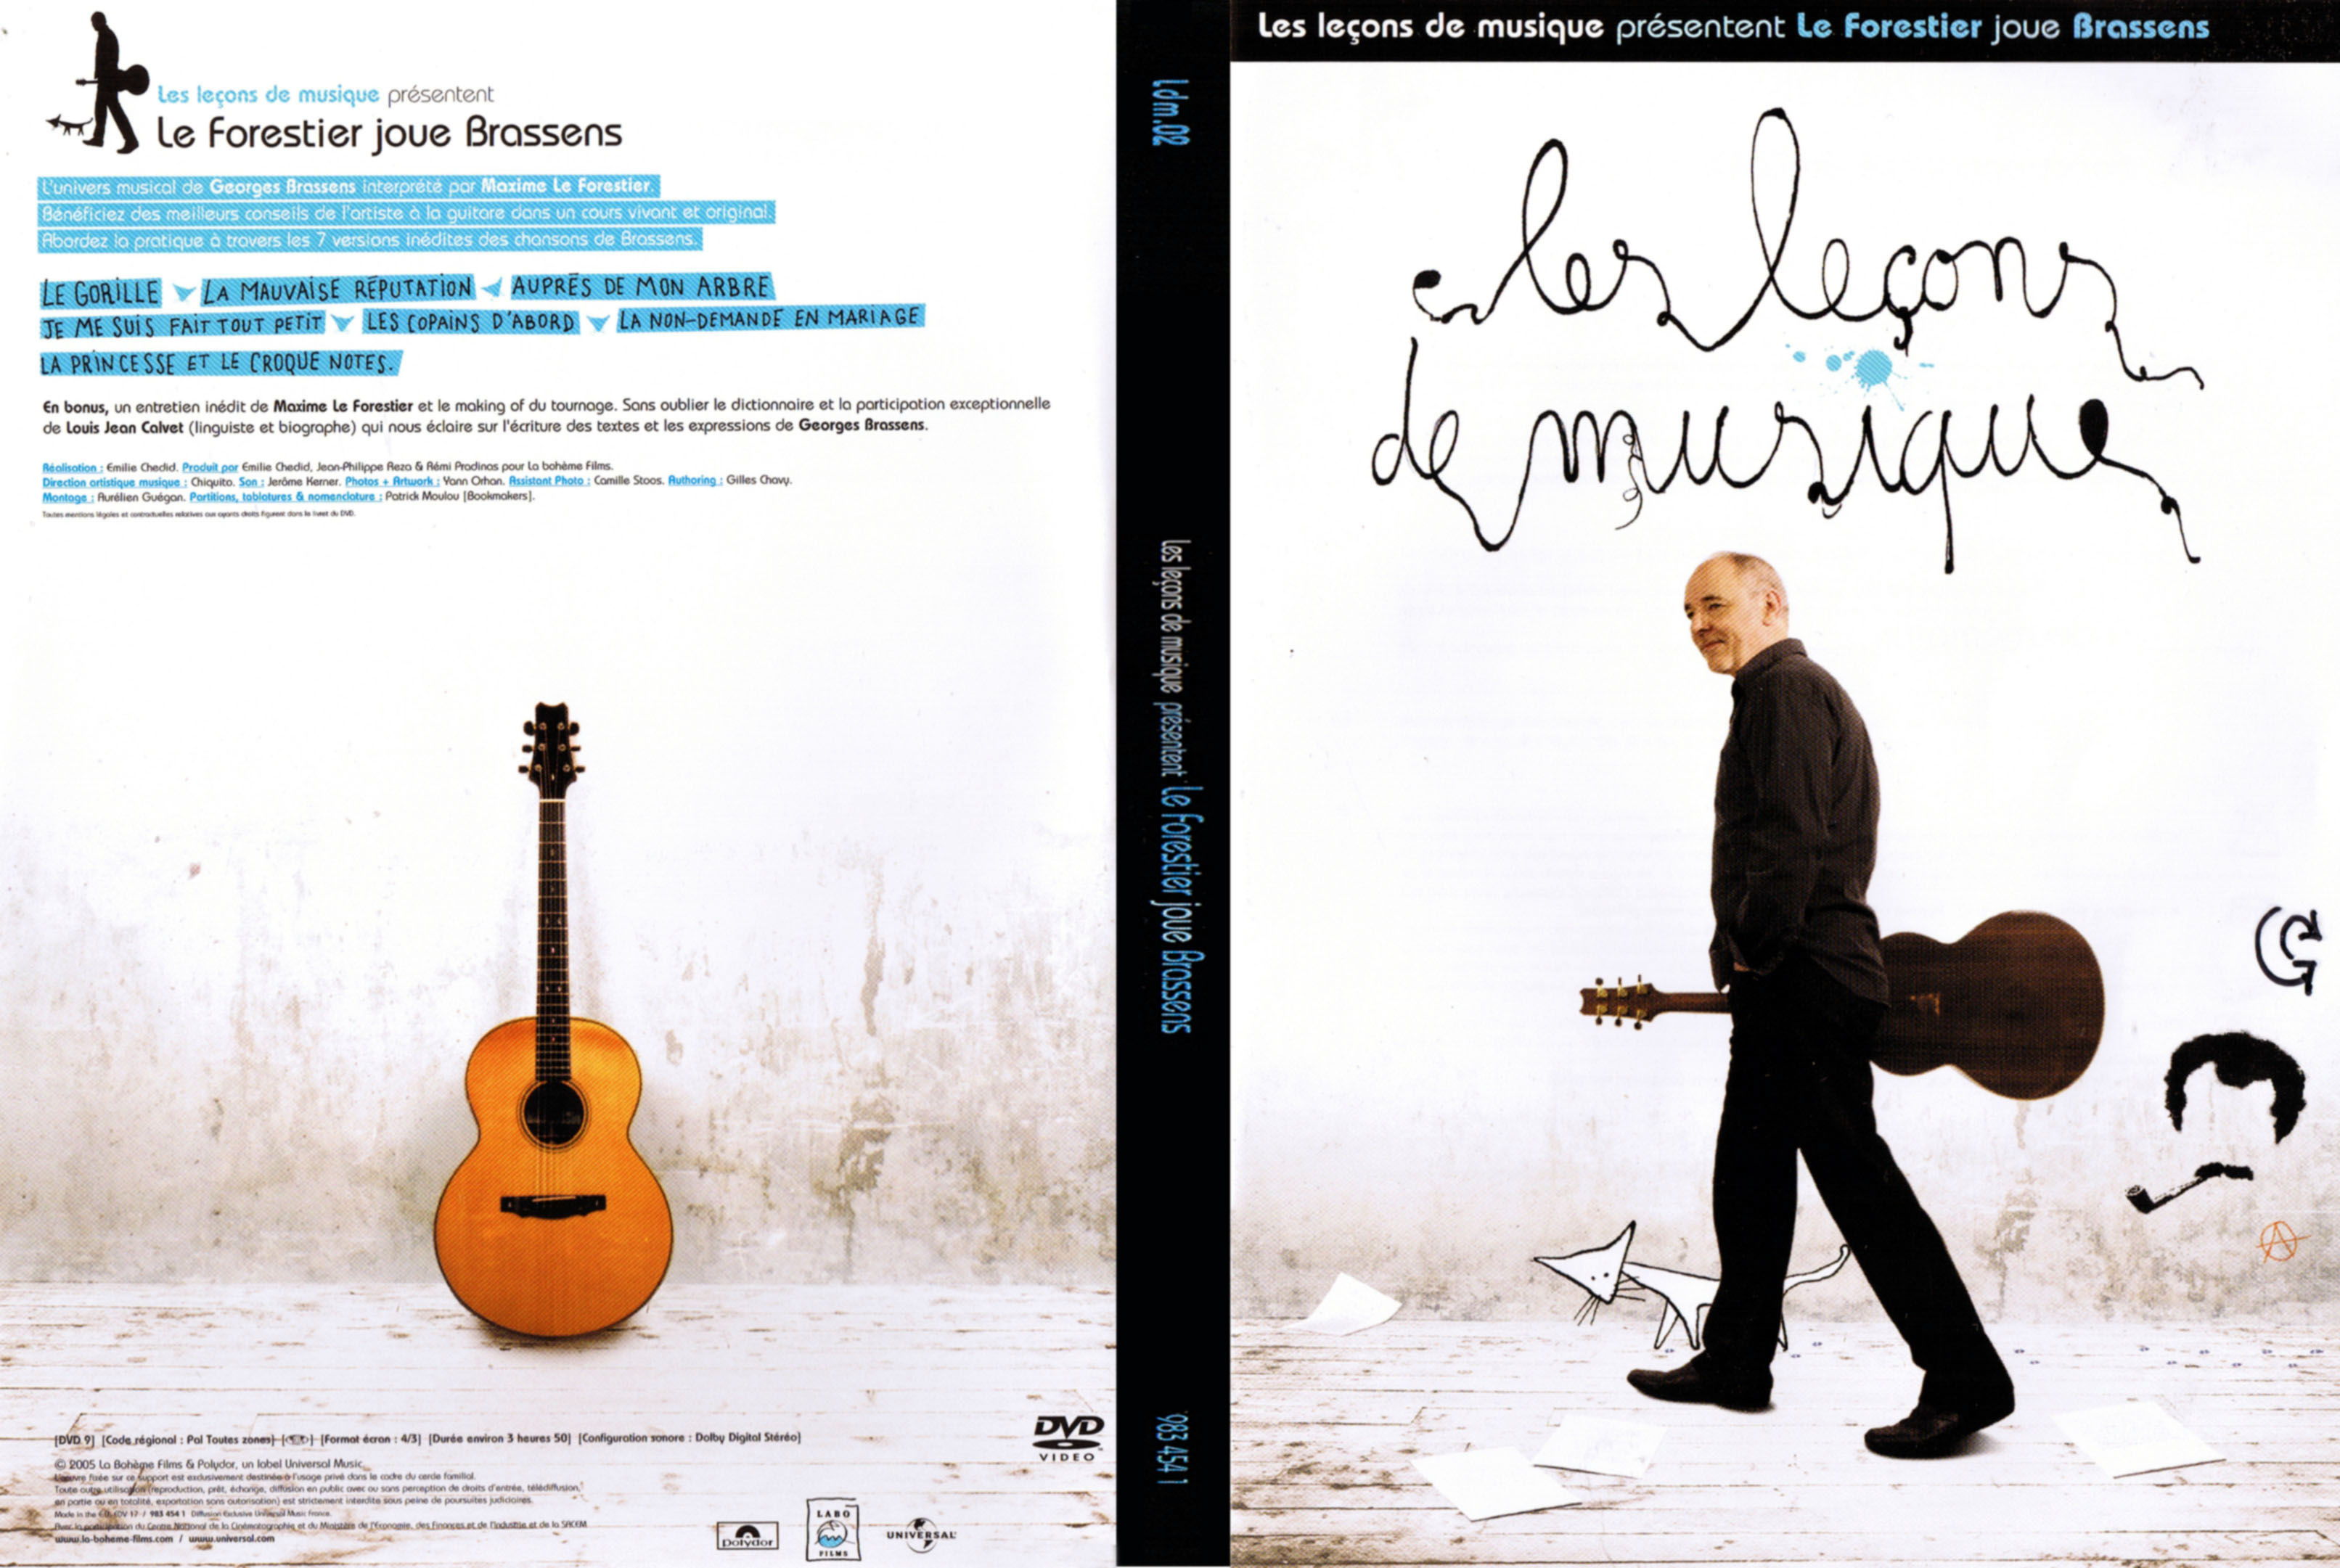 Jaquette DVD Les lecons de musique - Le Forestier joue Brassens